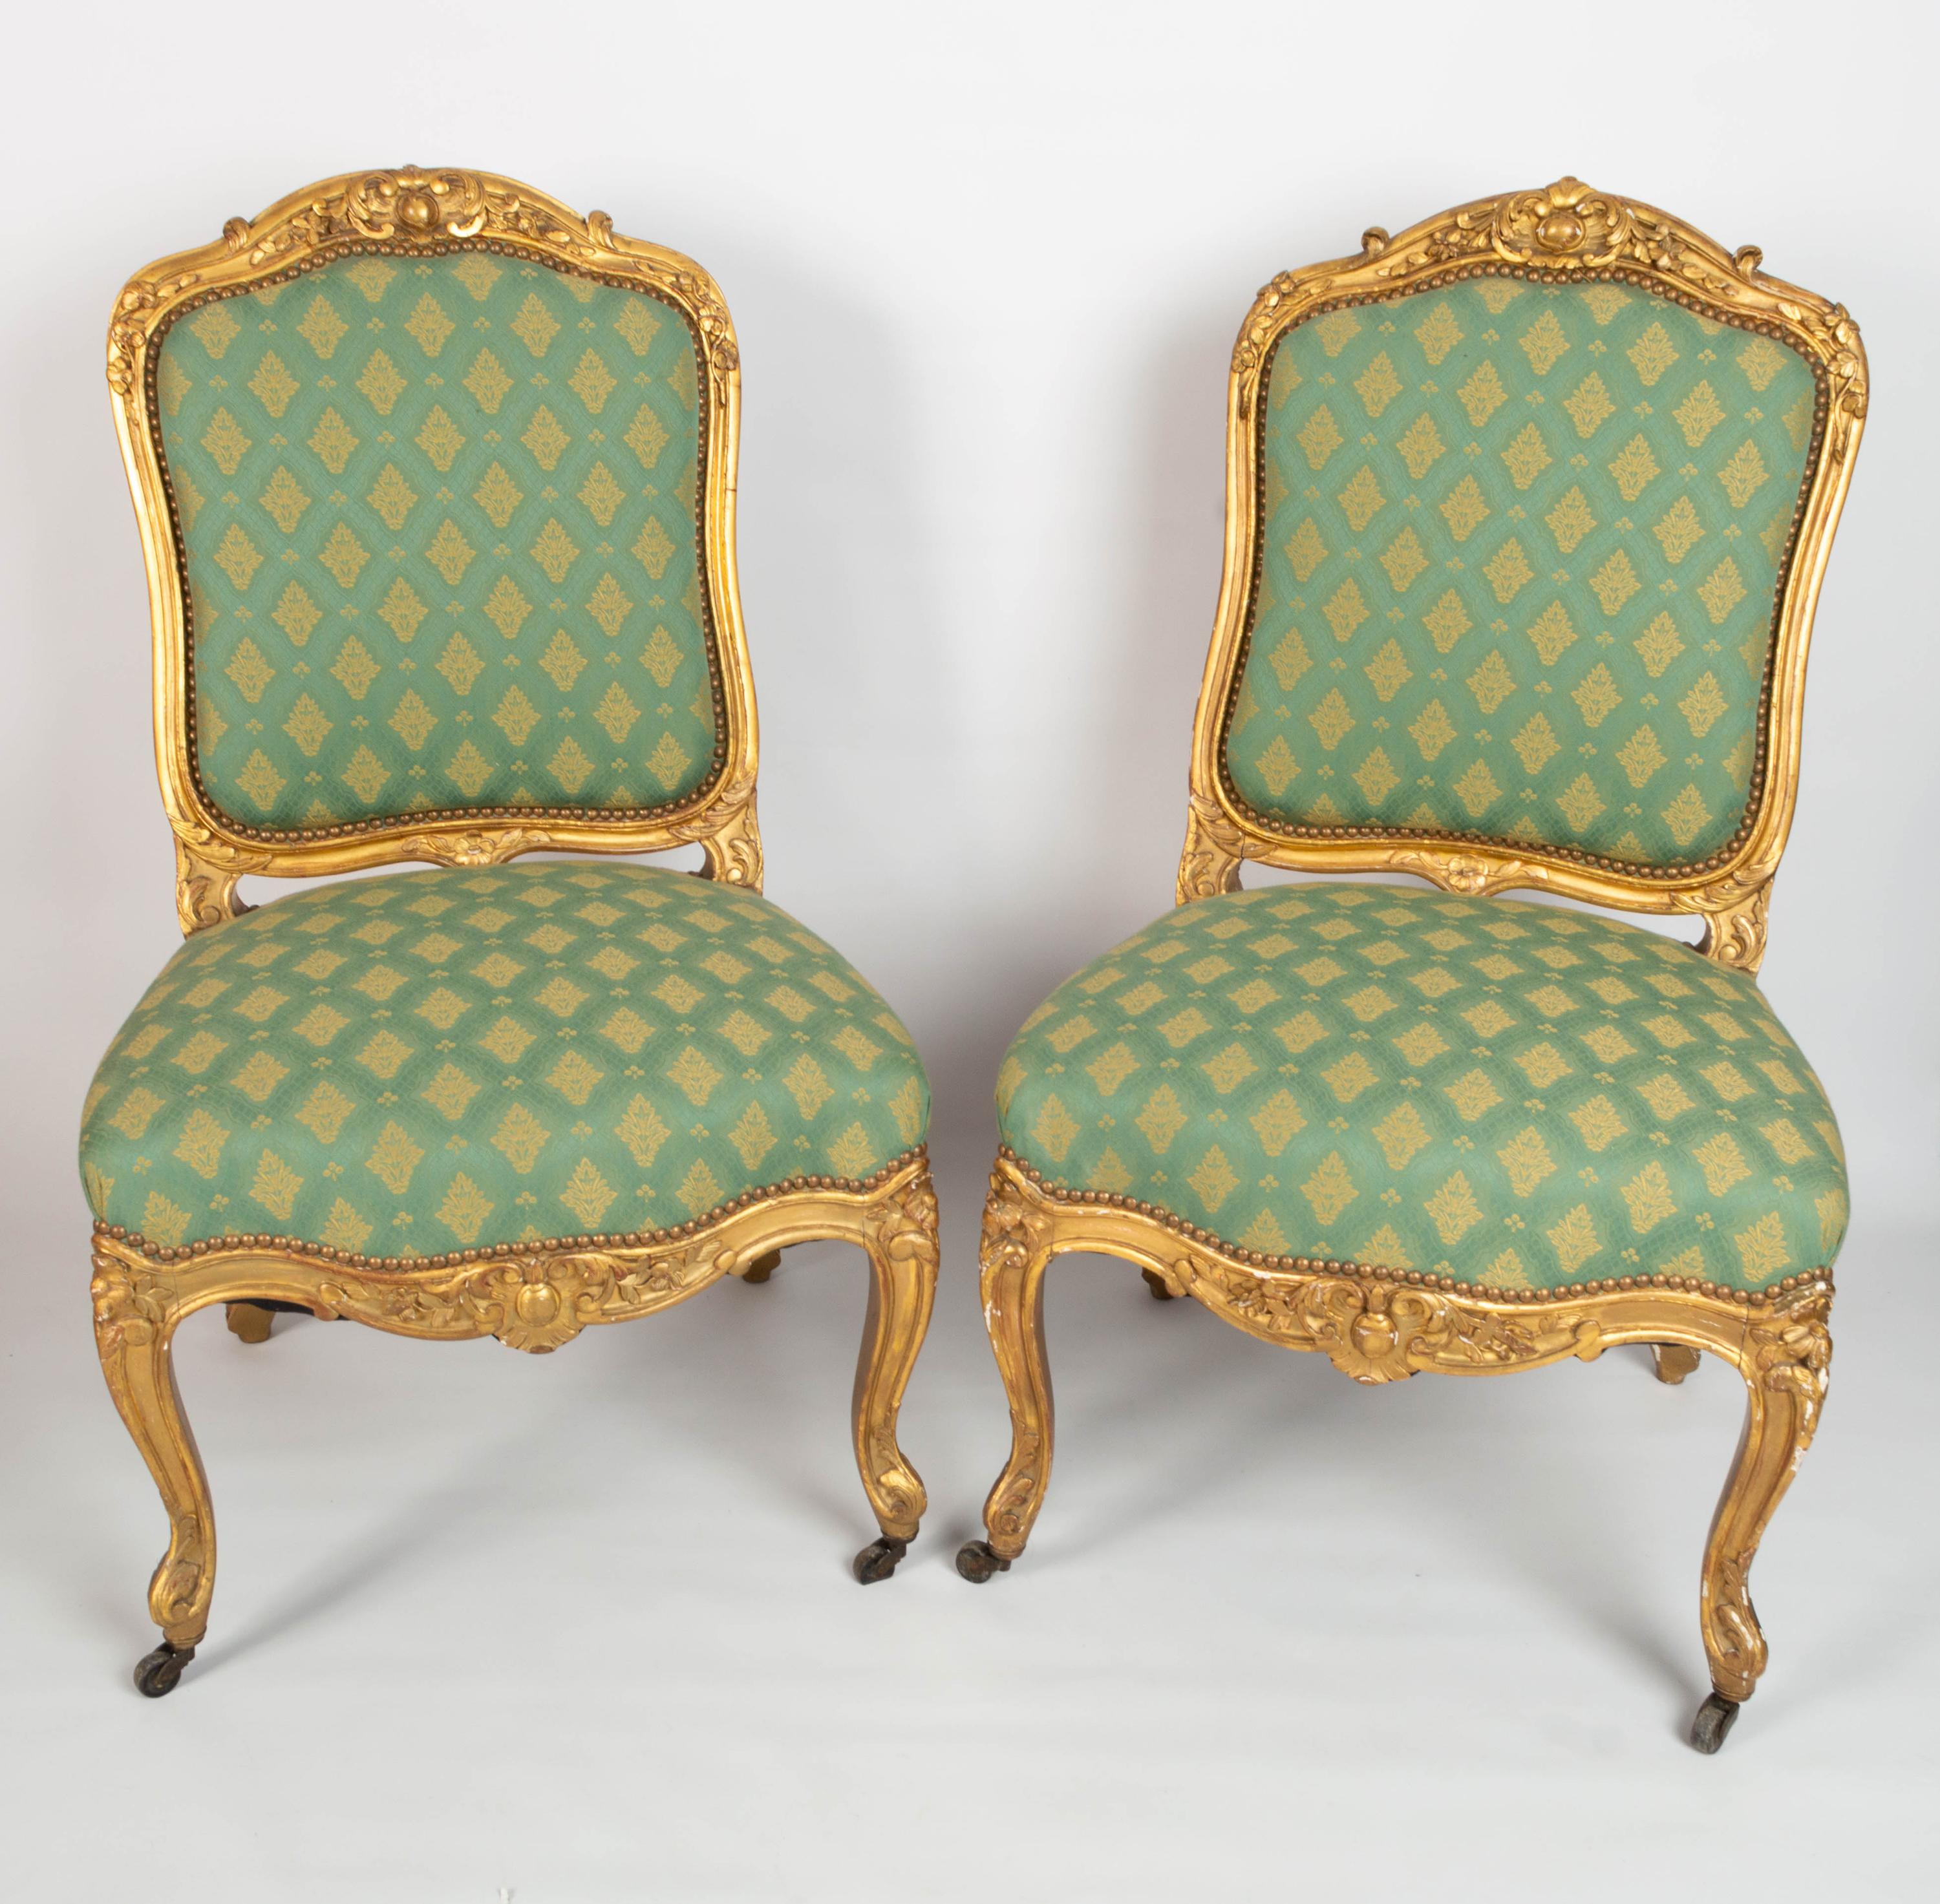 Paire de chaises de salon anciennes en bois doré de style Louis XV du XIXe siècle français

Une superbe paire de chaises de salon en bois doré de style Louis XV.
vers 1870, France.
Chaque chaise est traditionnellement garnie d'un tissu vert